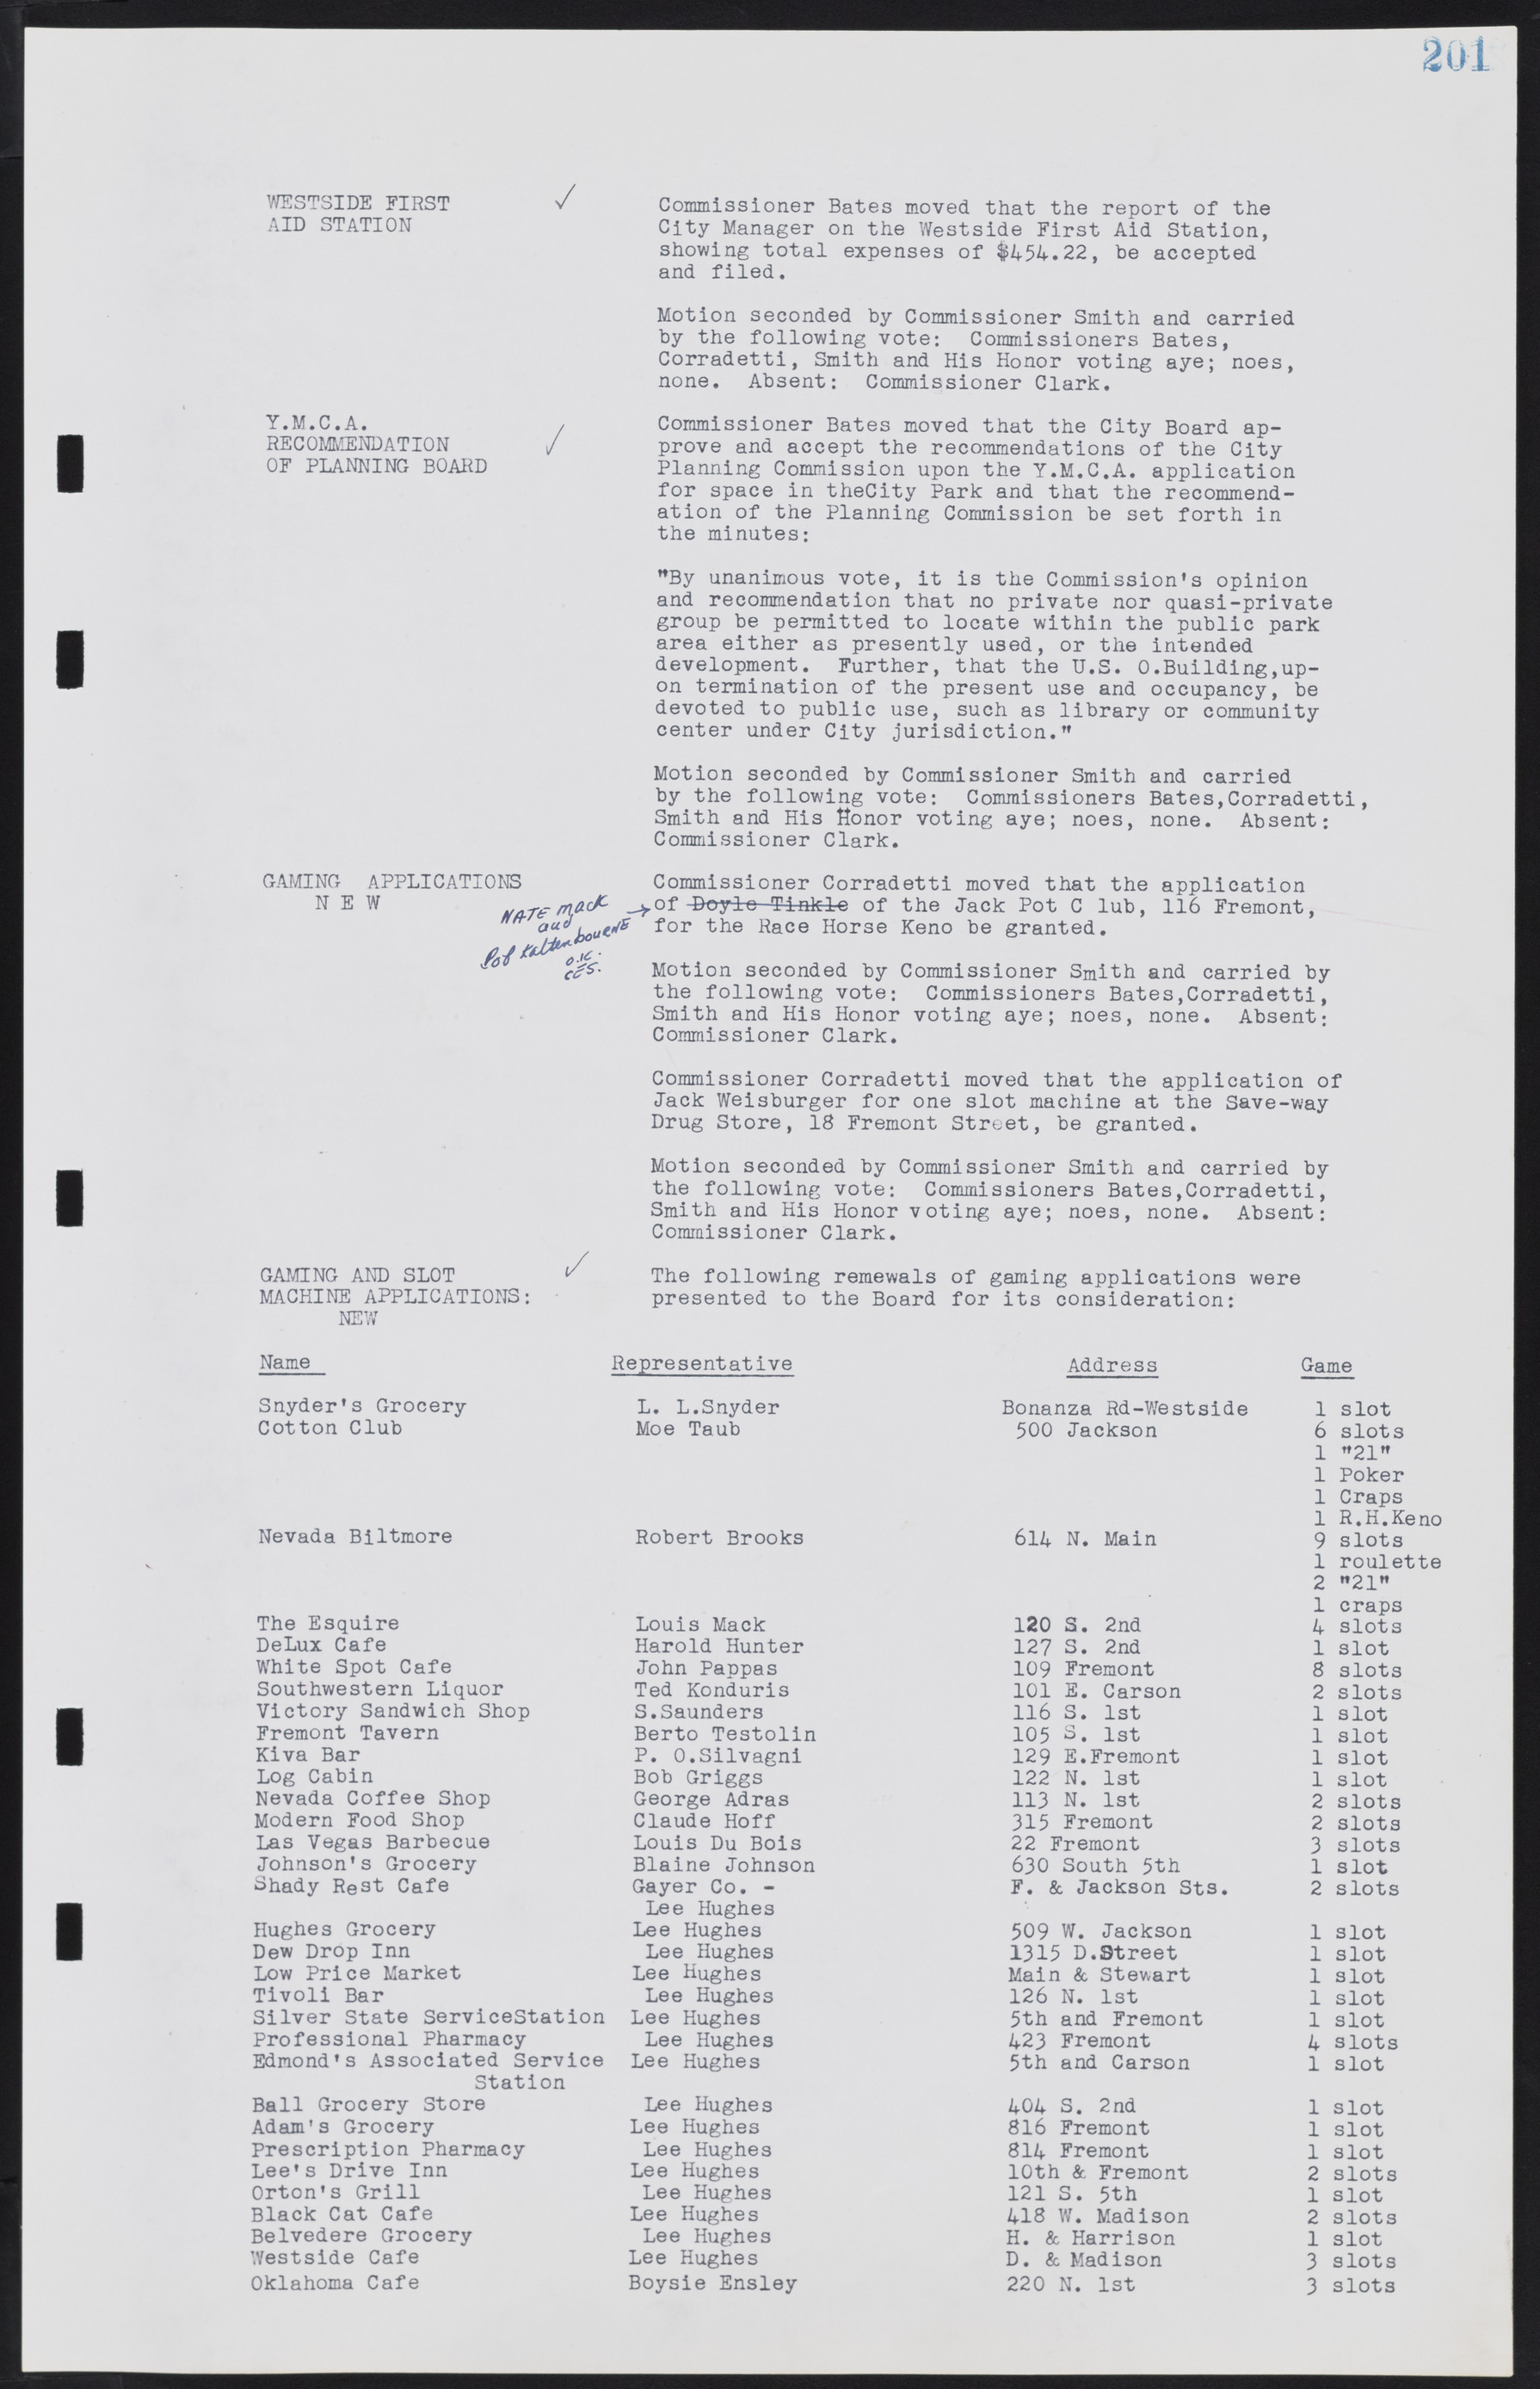 Las Vegas City Commission Minutes, August 11, 1942 to December 30, 1946, lvc000005-220